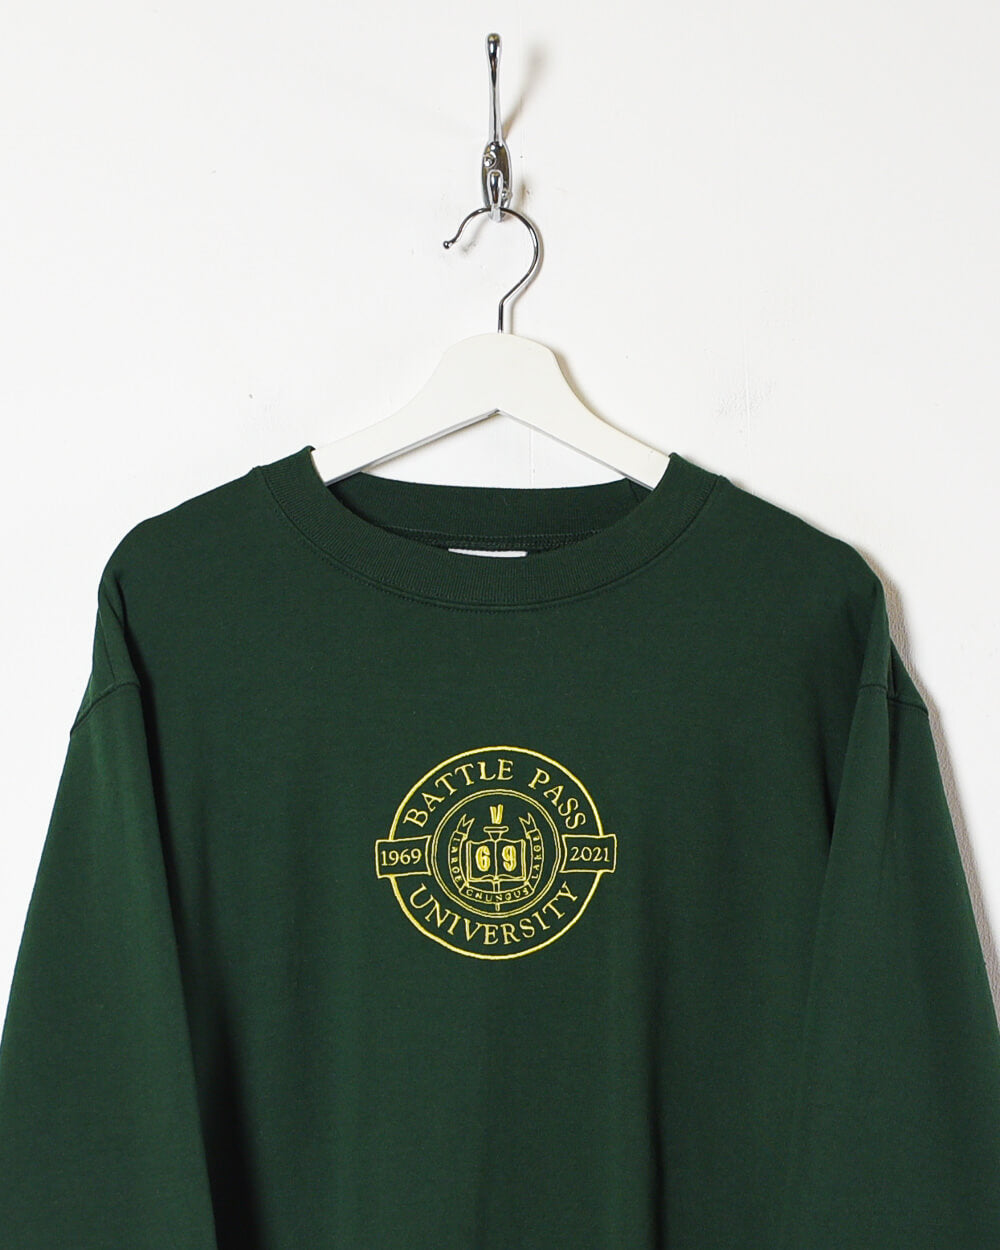 Green Champion Battle Pass University Sweatshirt - Small